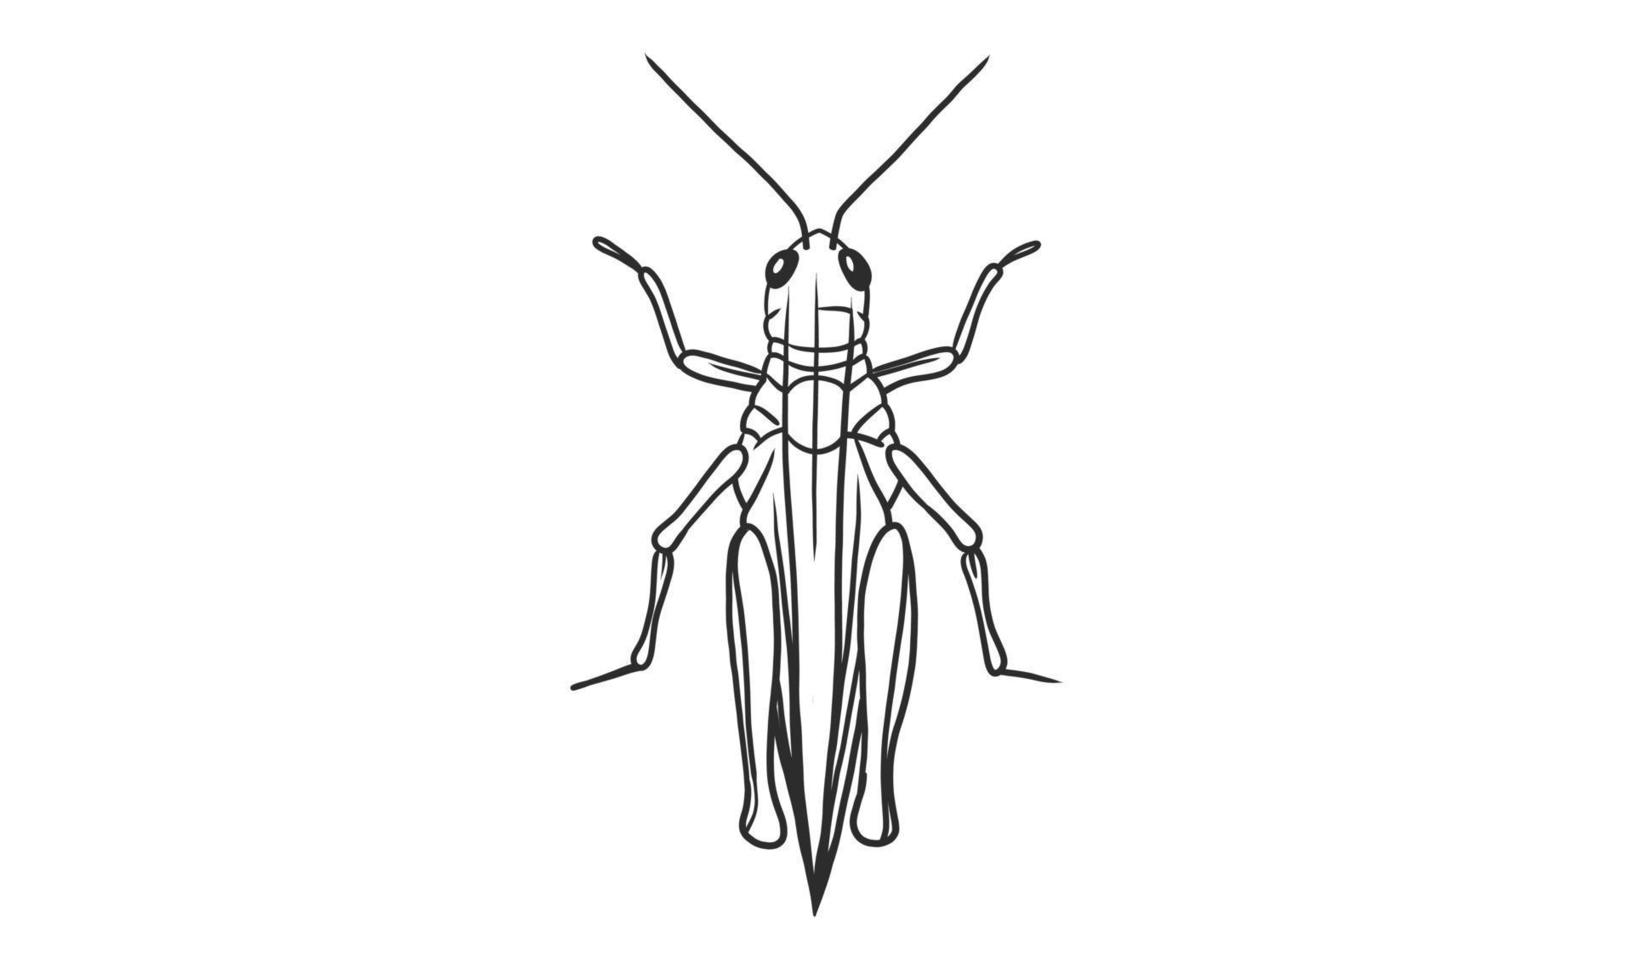 Ilustração em vetor Lineart de gafanhoto em fundo branco, desenho de inseto gafanhoto desenhado à mão